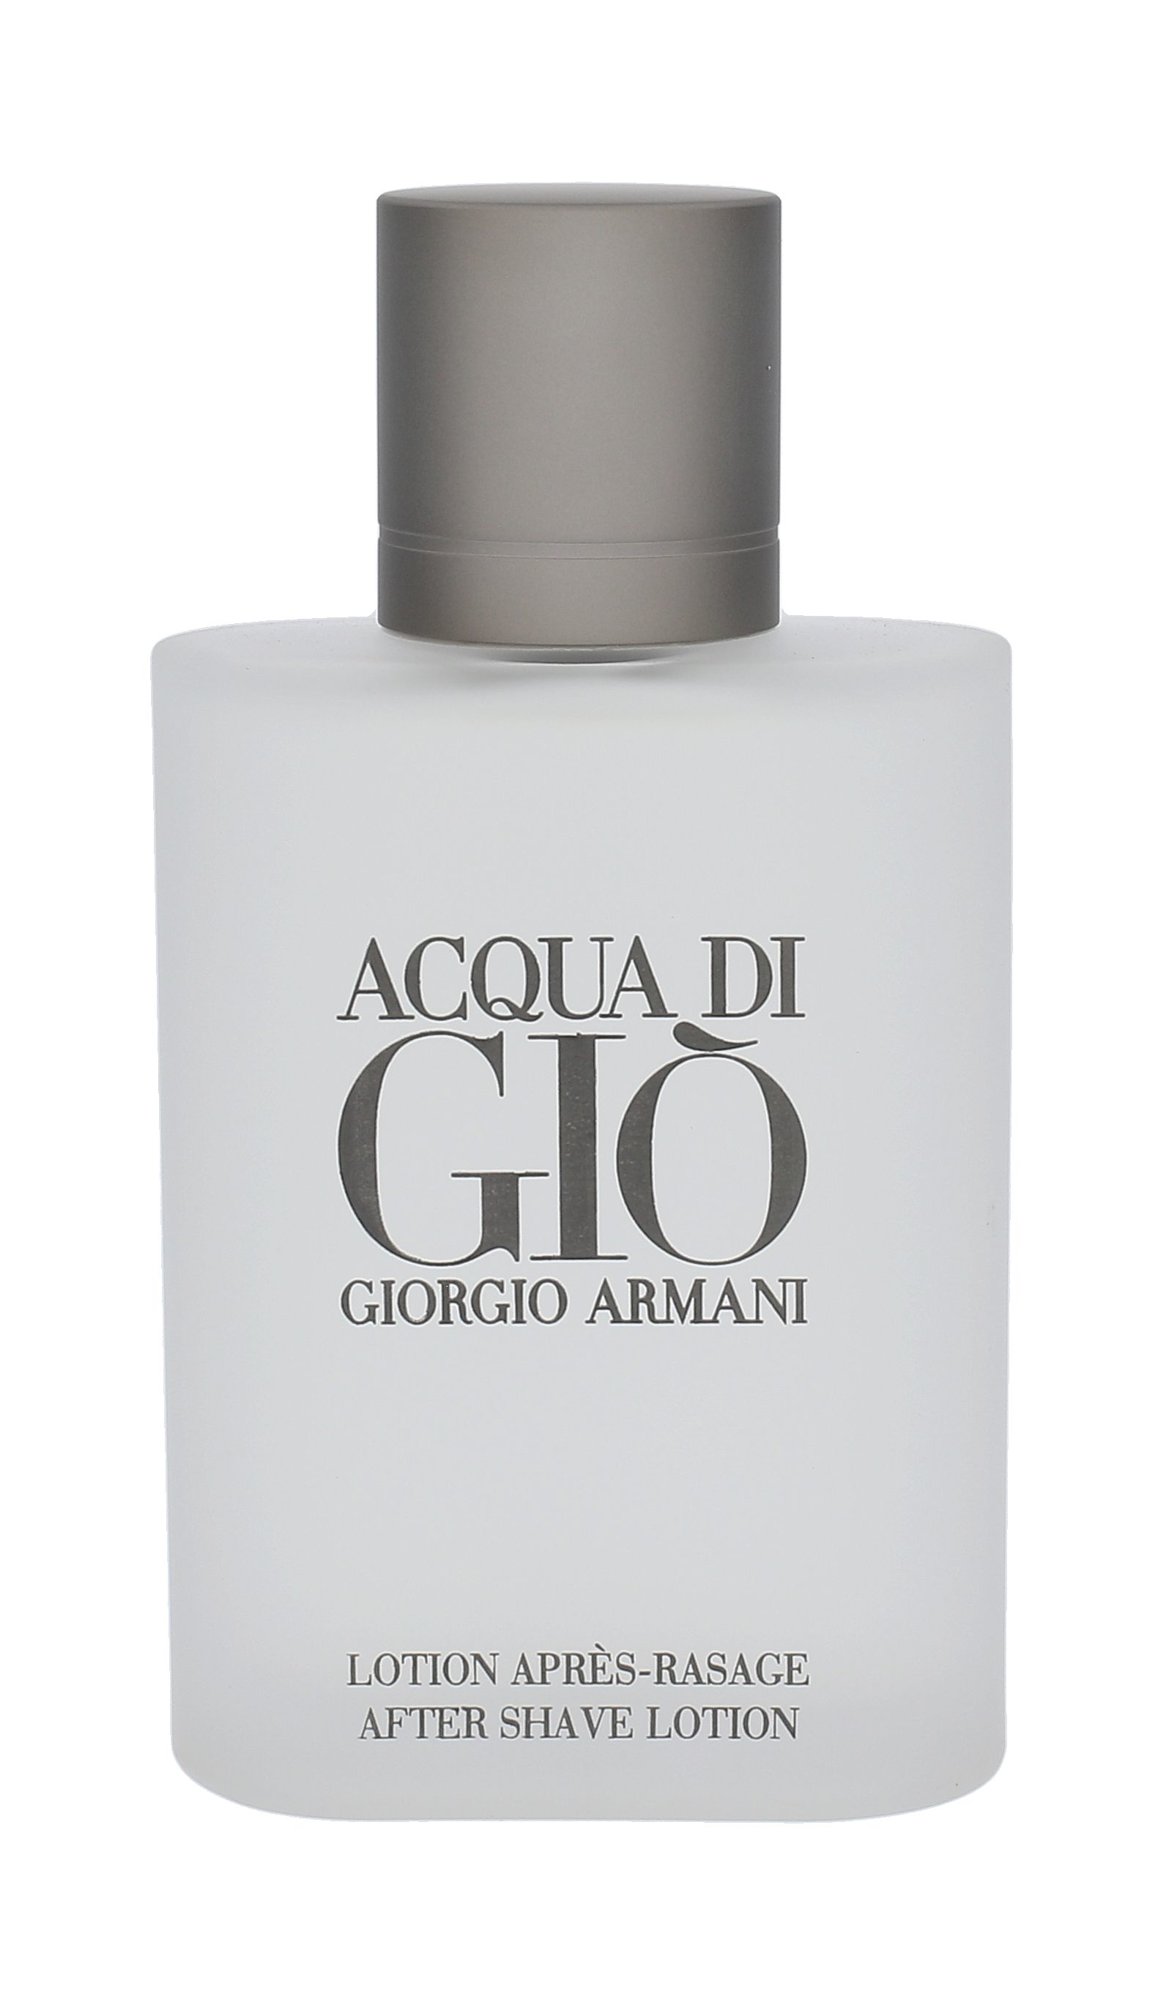 Giorgio Armani Acqua di Gio 100ml vanduo po skutimosi